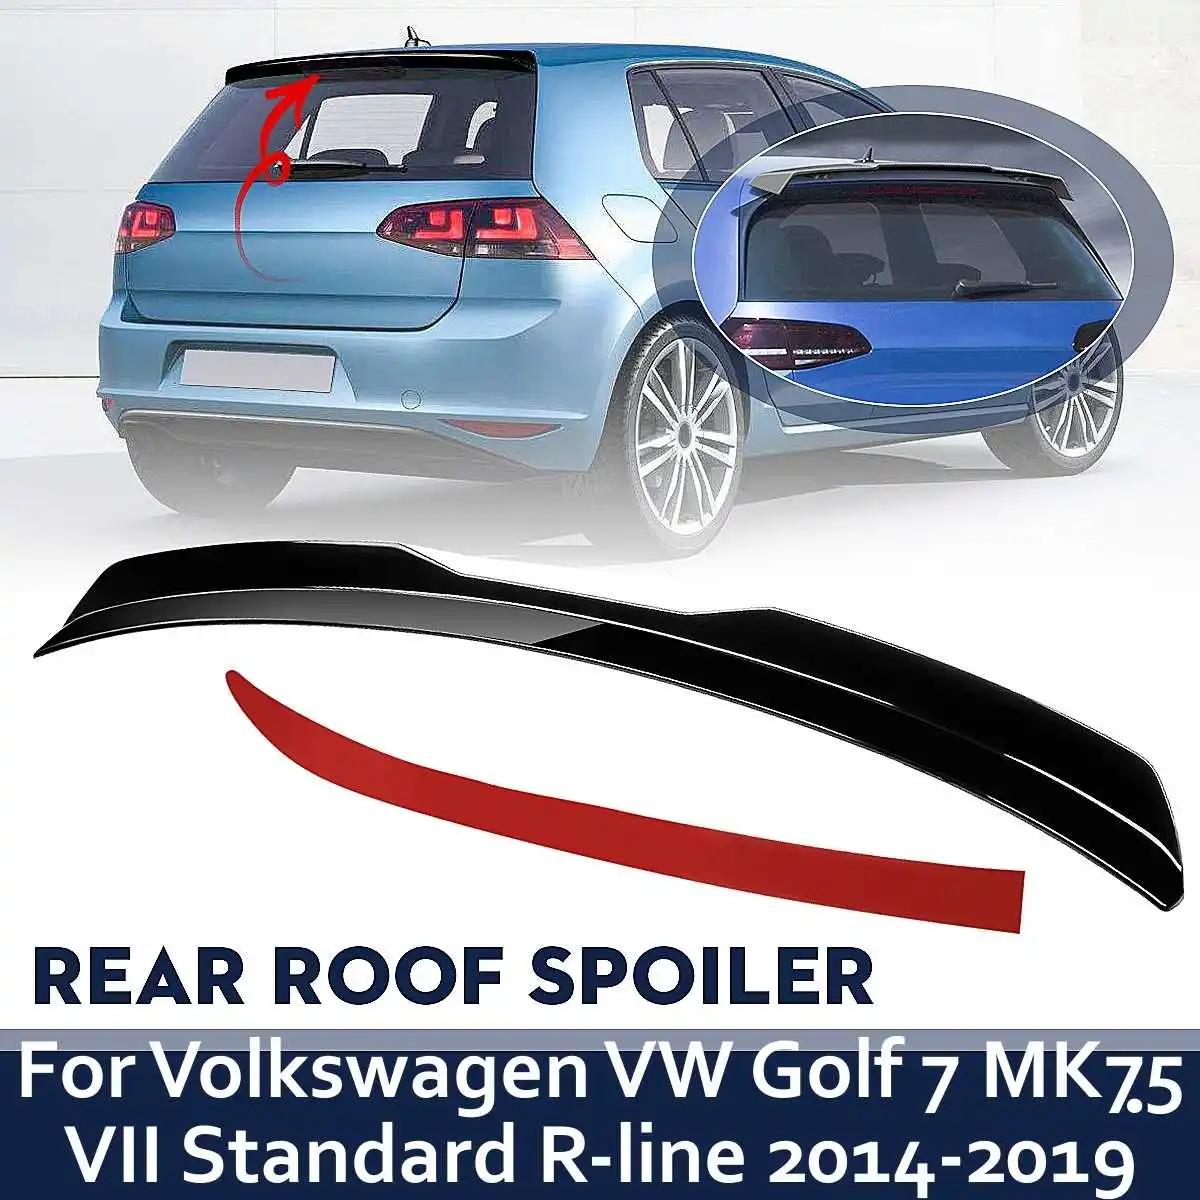 Задний спойлер на крышу для Volkswagen VW Golf 7 MK75 VII GTI R-Line 2014 2015 2016 2017 2018 2019 глянцевый